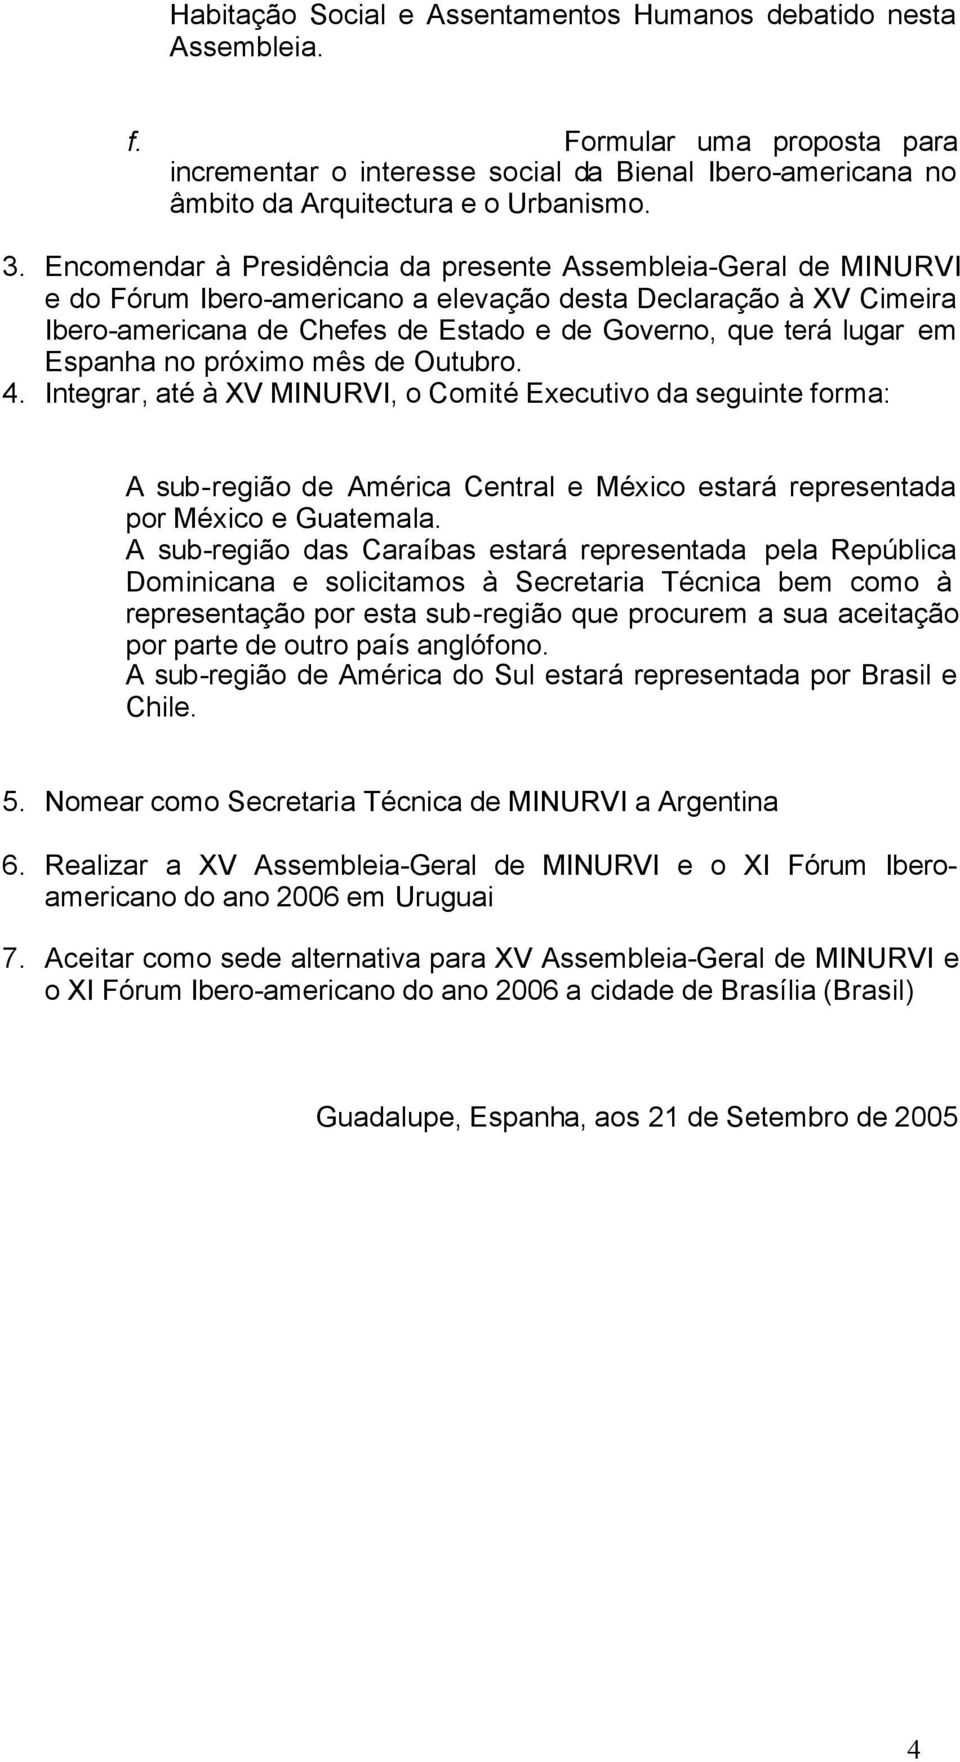 em Espanha no próximo mês de Outubro. 4. Integrar, até à XV MINURVI, o Comité Executivo da seguinte forma: A sub-região de América Central e México estará representada por México e Guatemala.